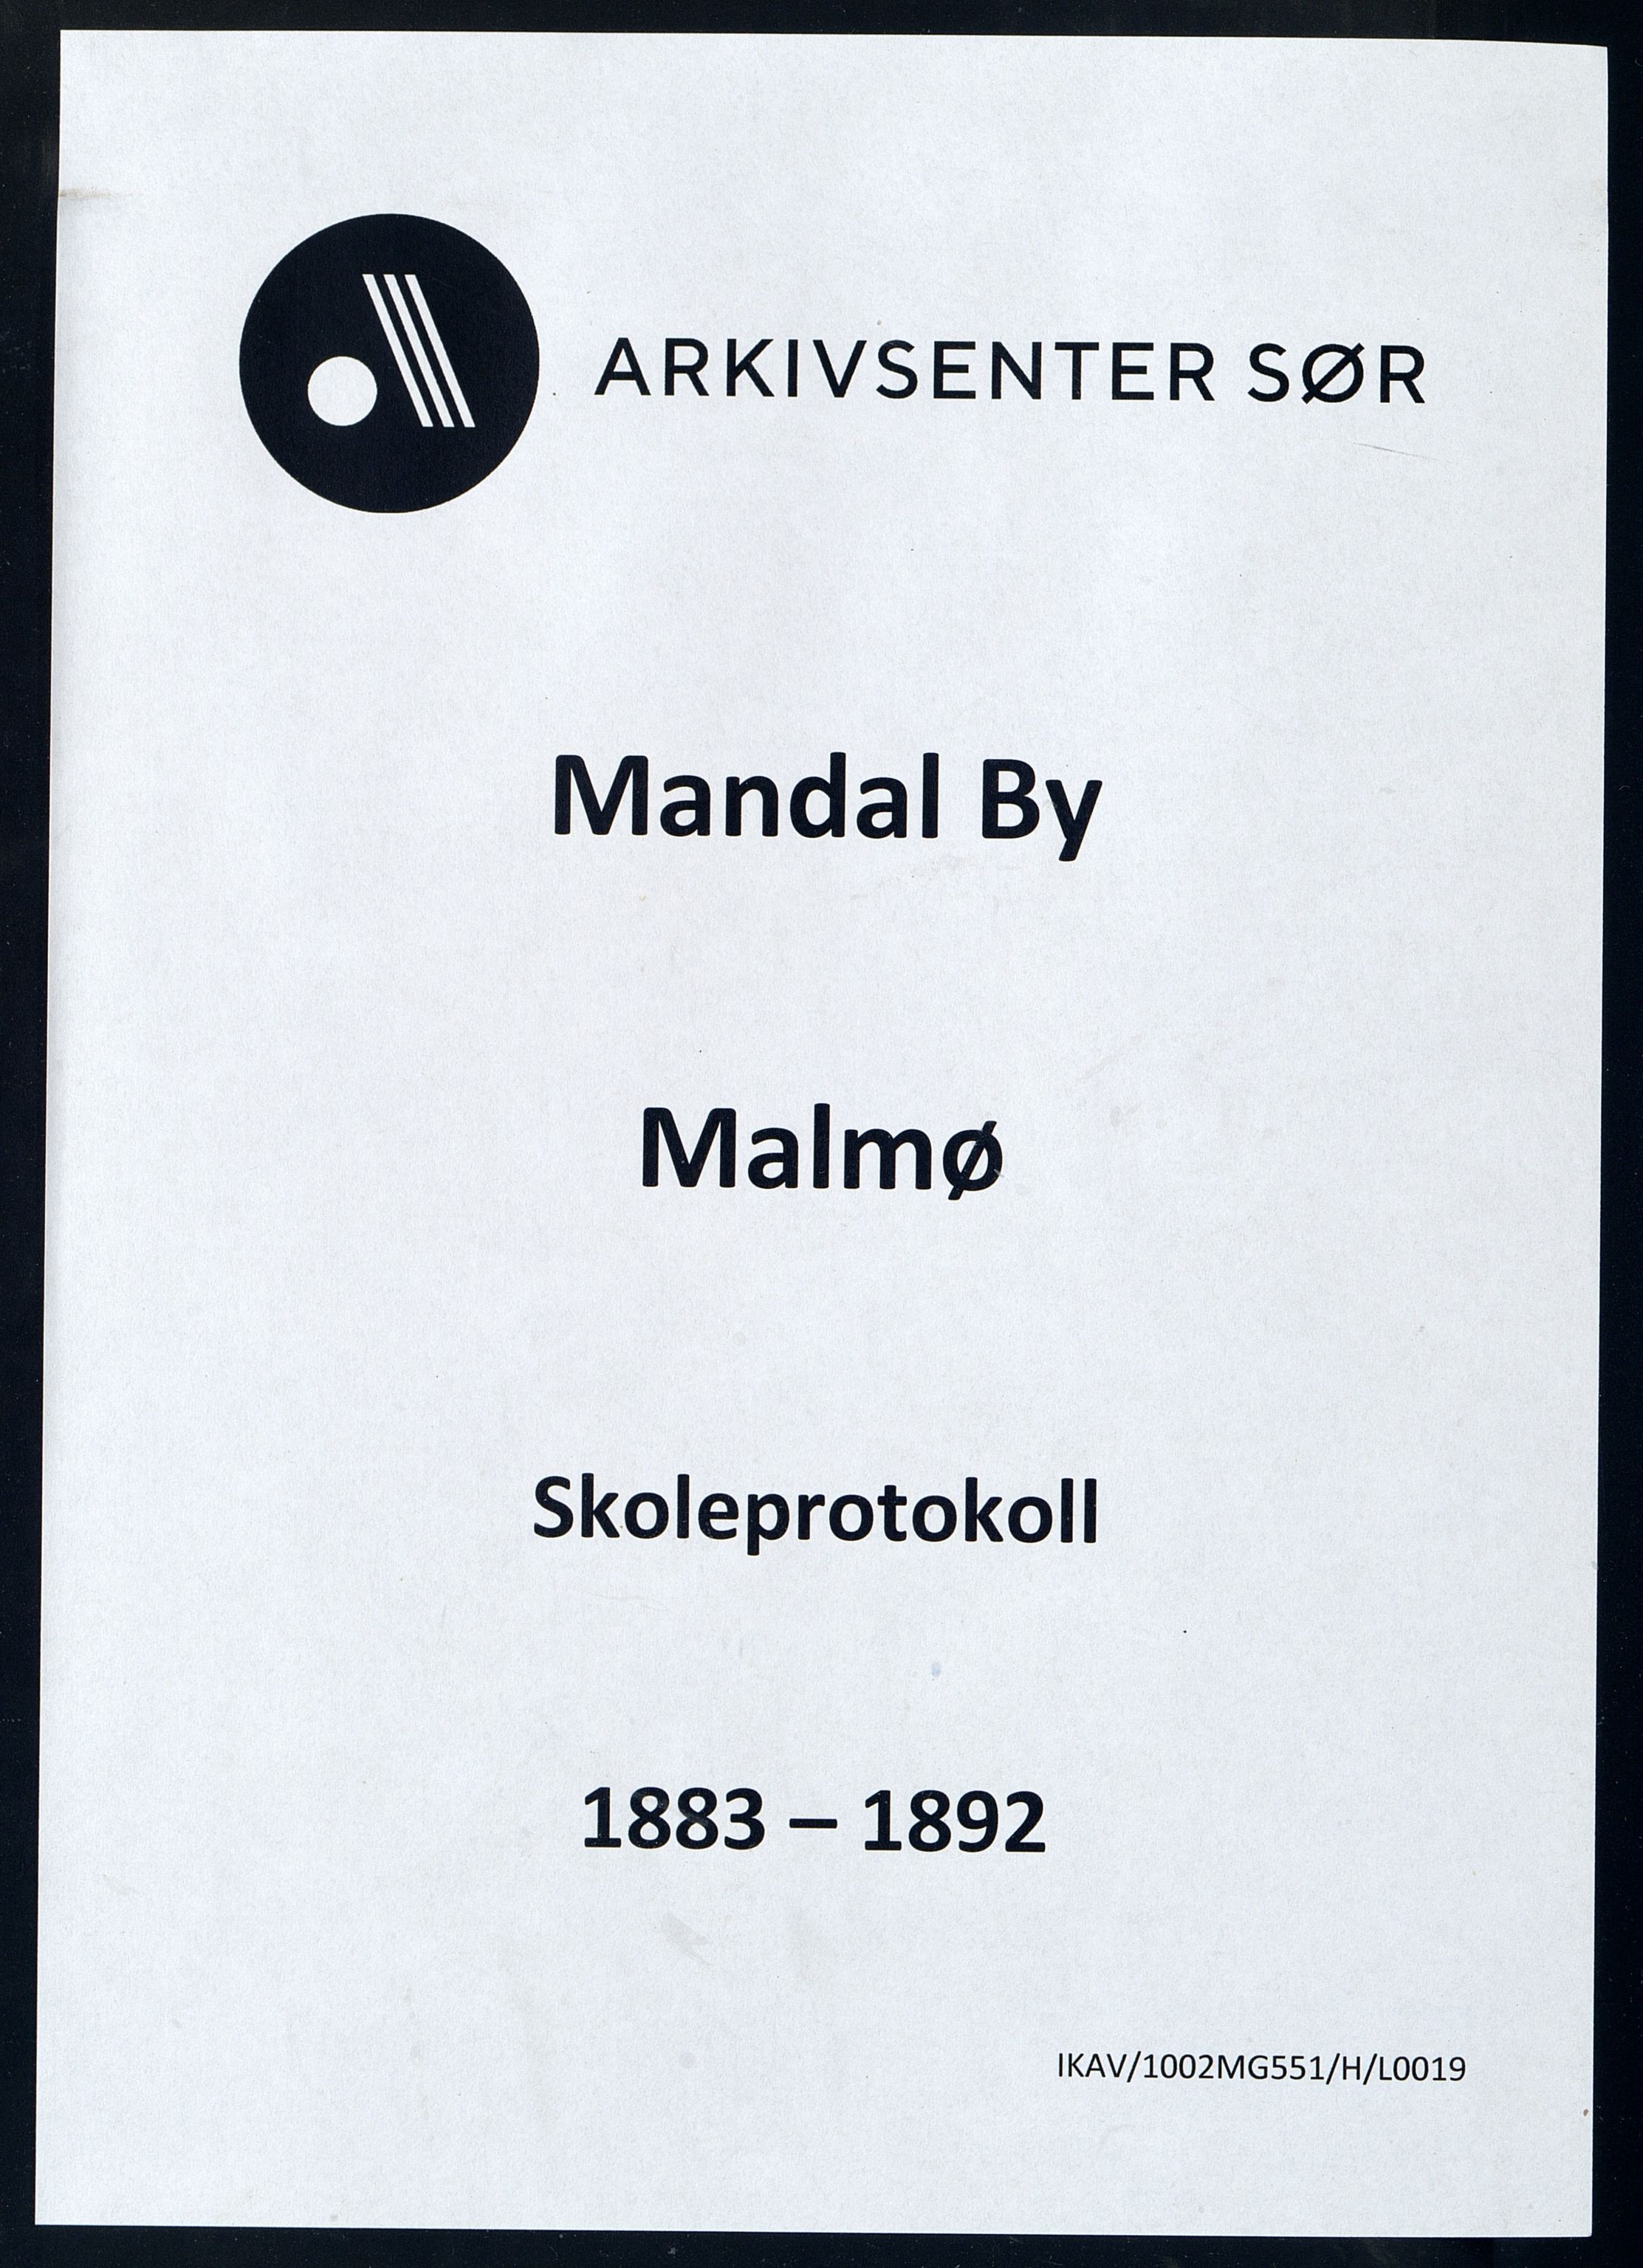 Mandal By - Mandal Allmueskole/Folkeskole/Skole, IKAV/1002MG551/H/L0019: Skoleprotokoll, 1883-1892